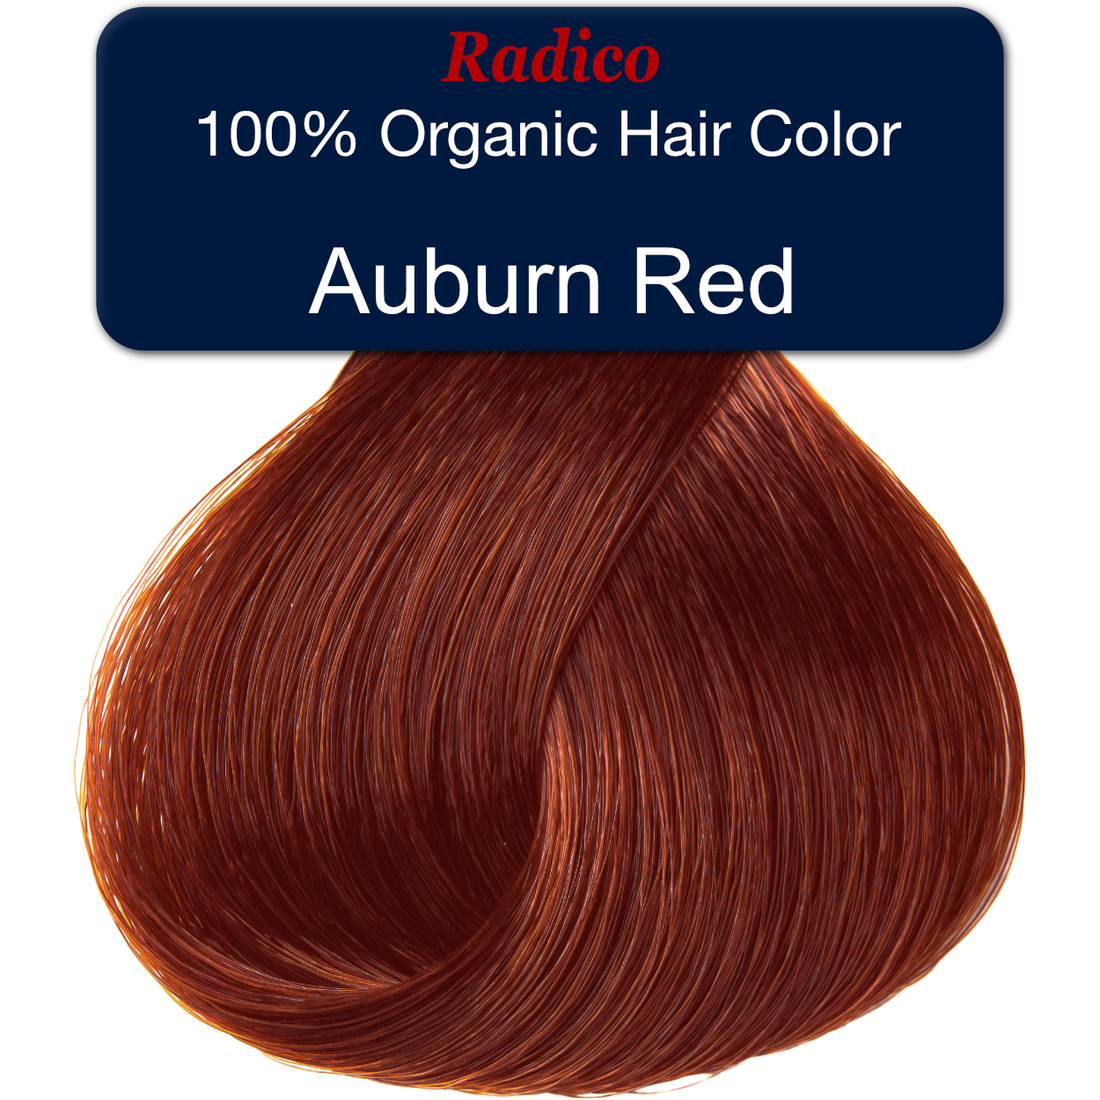 Samler blade replika hylde Natural Auburn Red - Natural-Looking Hair Dye – Radico USA